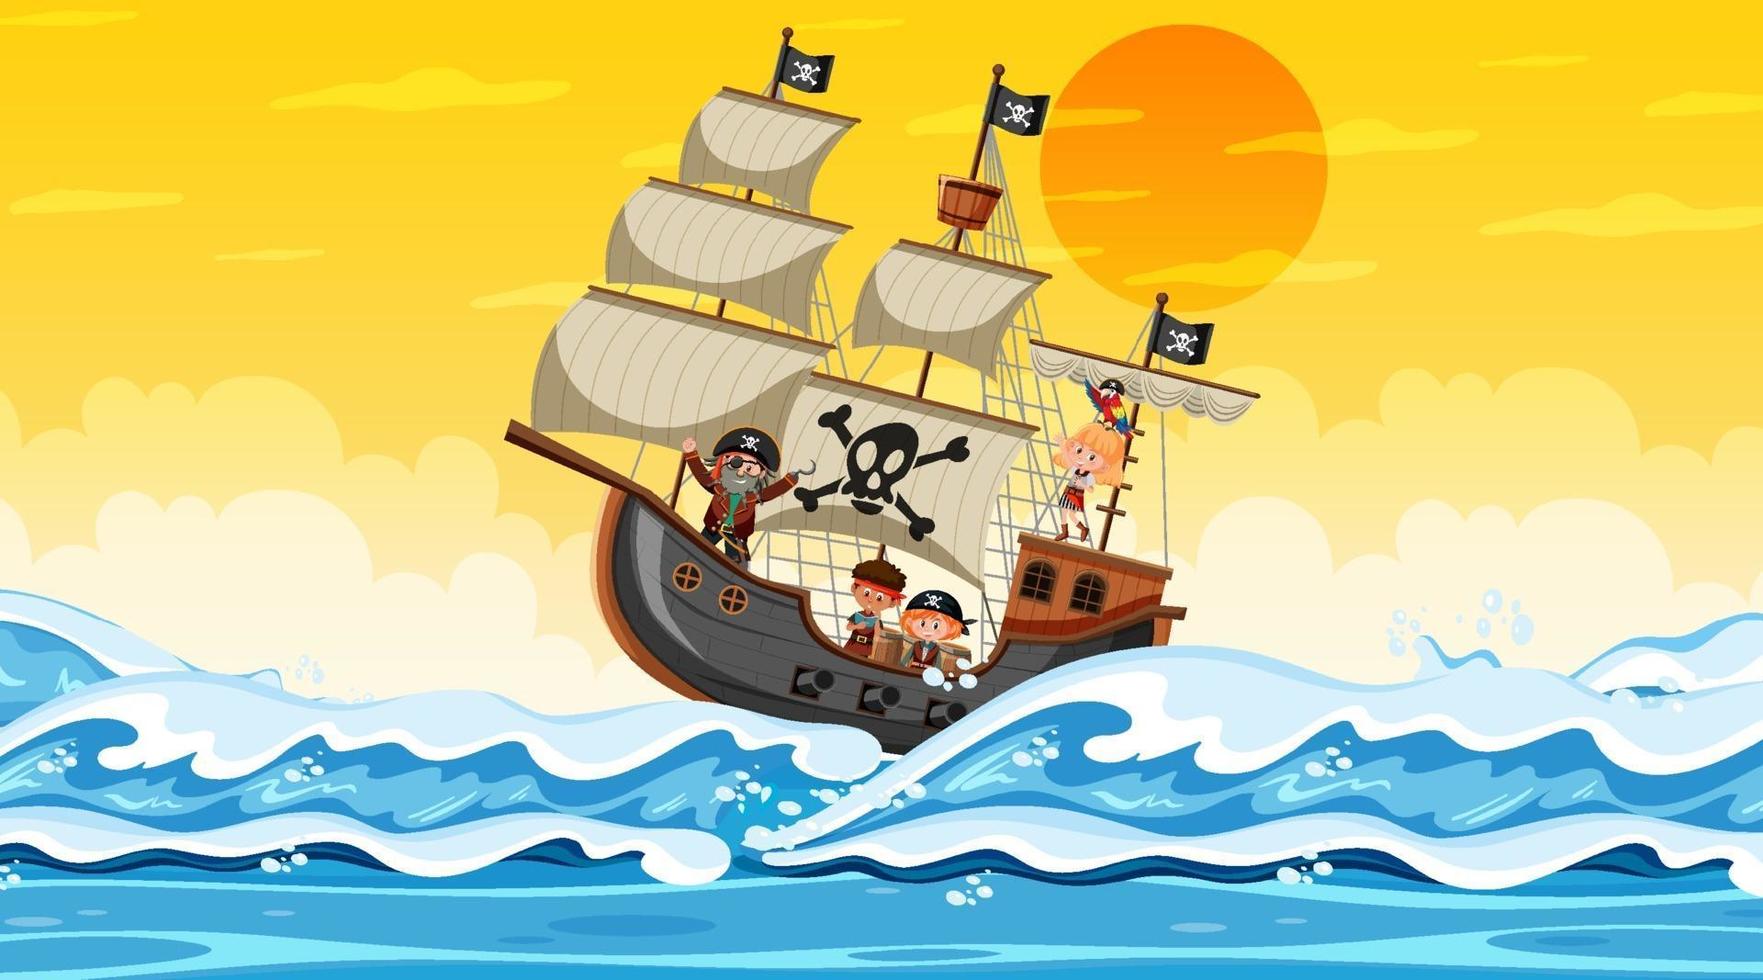 oceano com navio pirata na cena do pôr do sol em estilo cartoon vetor